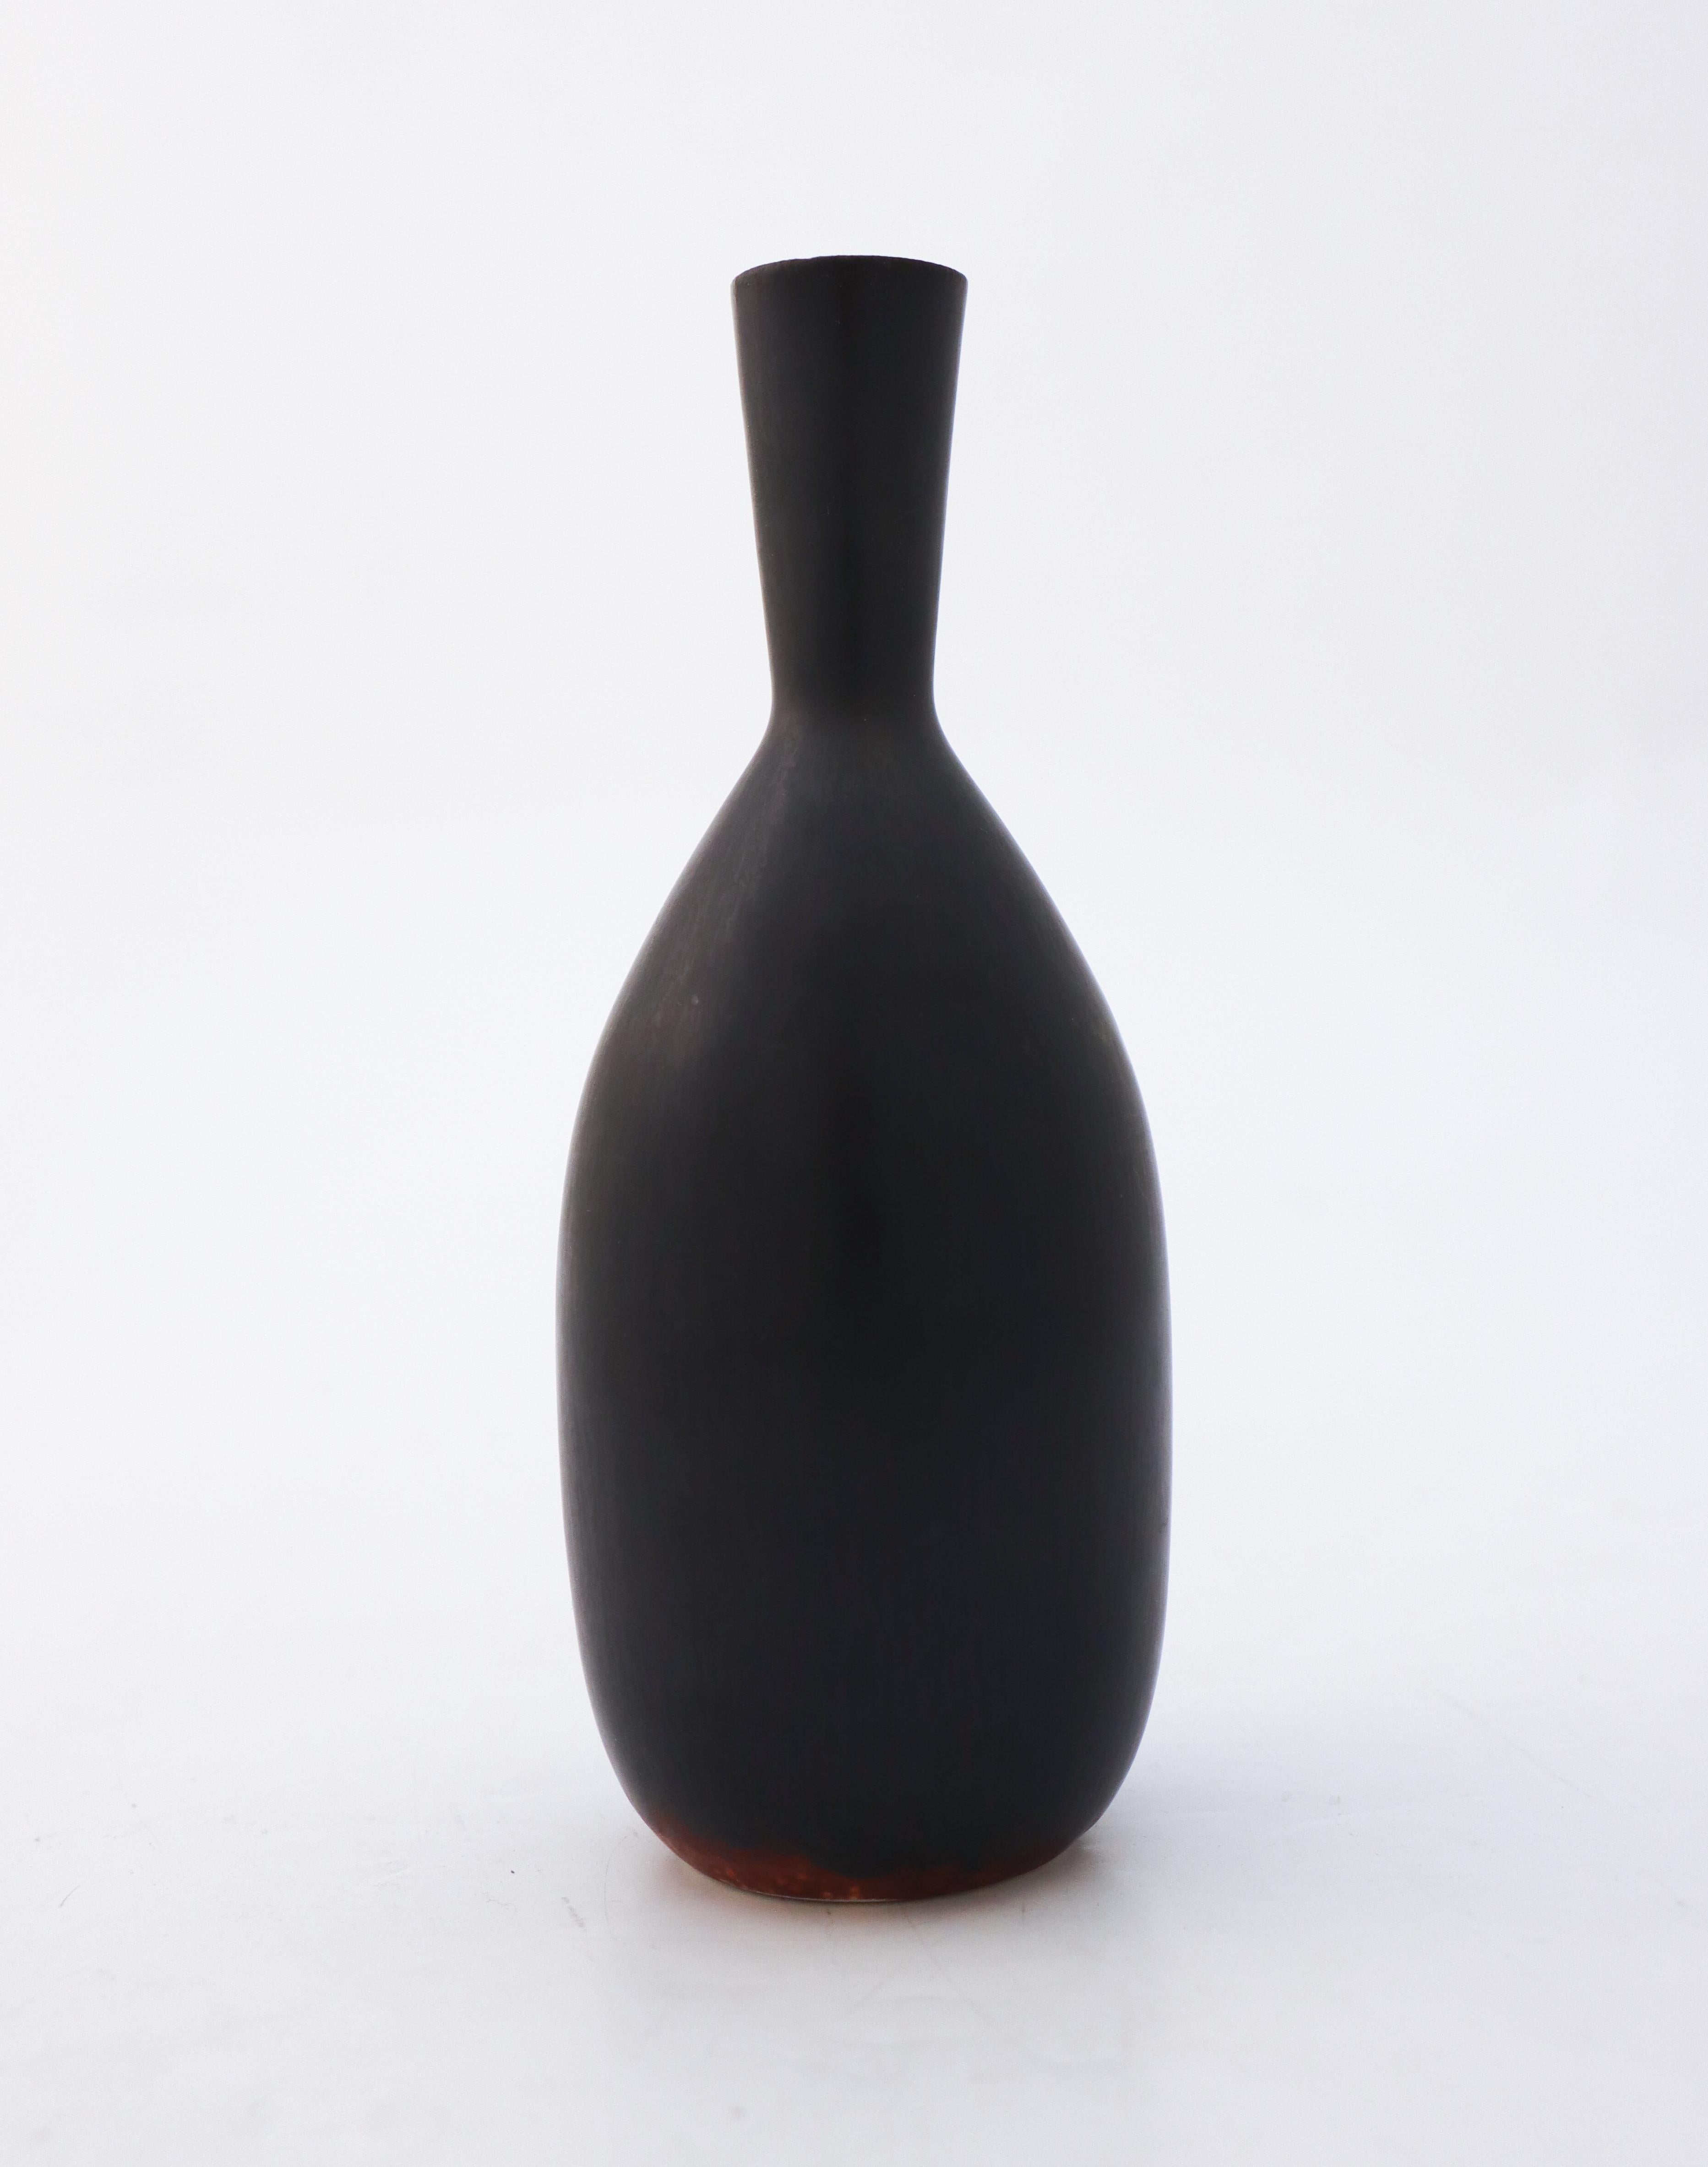 Ce vase noir, conçu par Carl-Harry Stålhane à Rörstrand Atelier, mesure 15,5 cm de haut. Il est de première qualité et en excellent état. 

Carl-Harry Stålhane est l'un des grands noms de la céramique scandinave du milieu du siècle dernier. Il a été